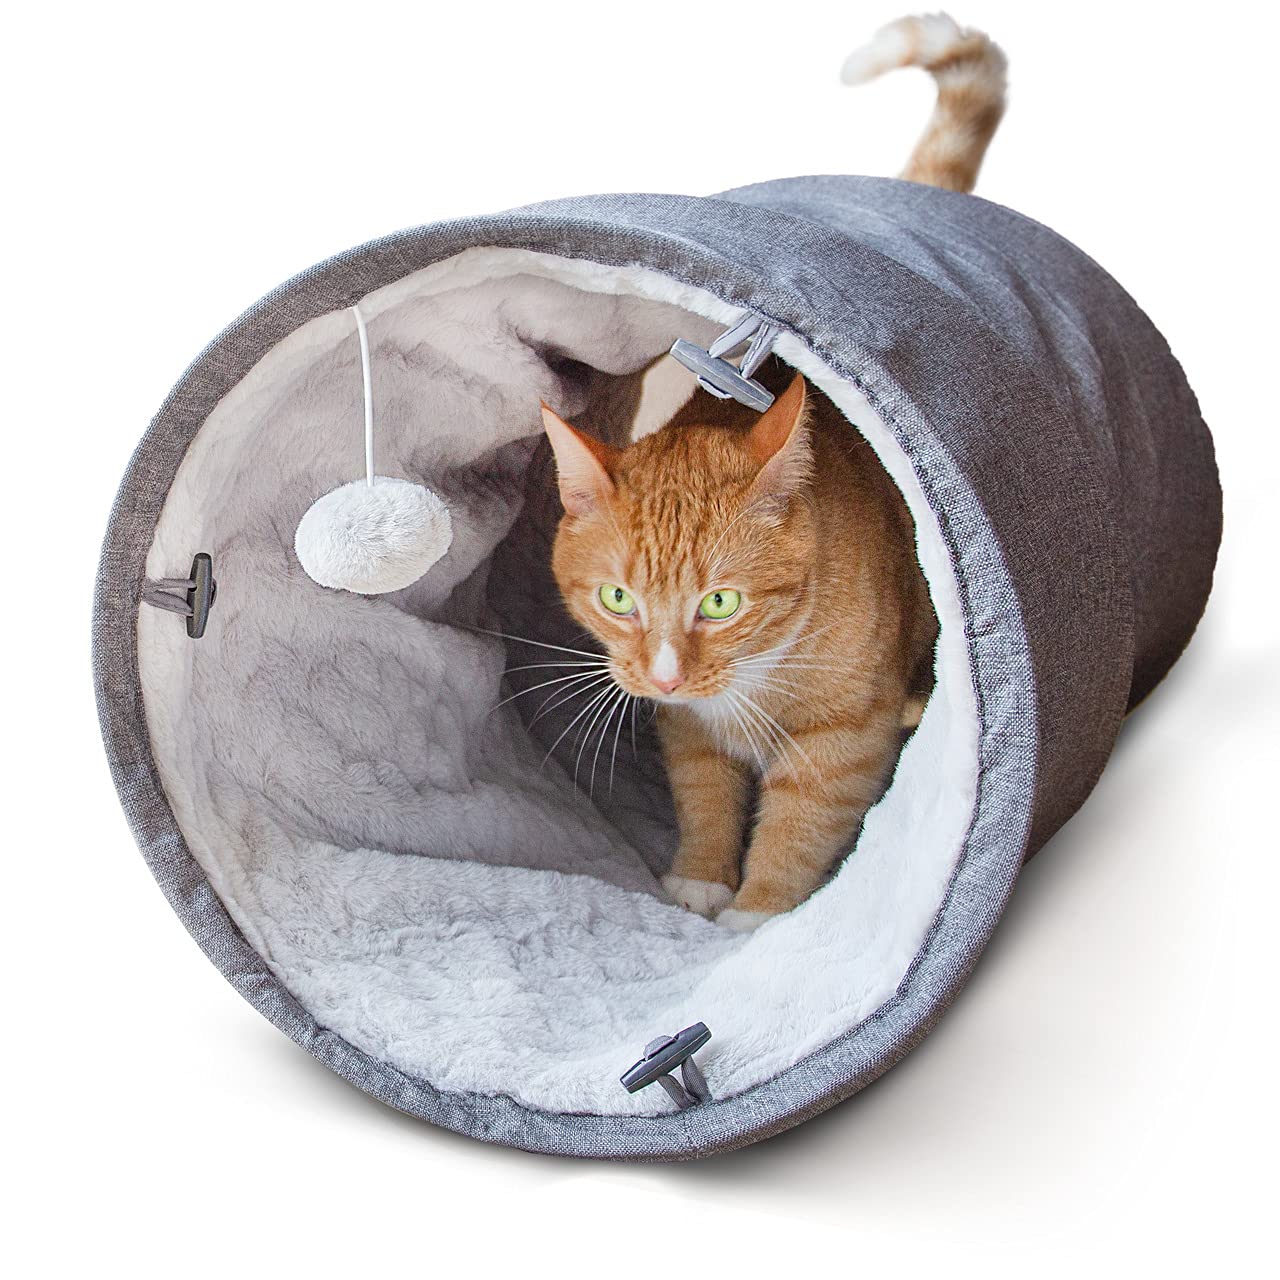 CanadianCat Company | Spieltunnel für Katzen mit Kuschelfell | grau | ca. 35 x 70 cm - Variable Form, integriertes Katzenspielzeug